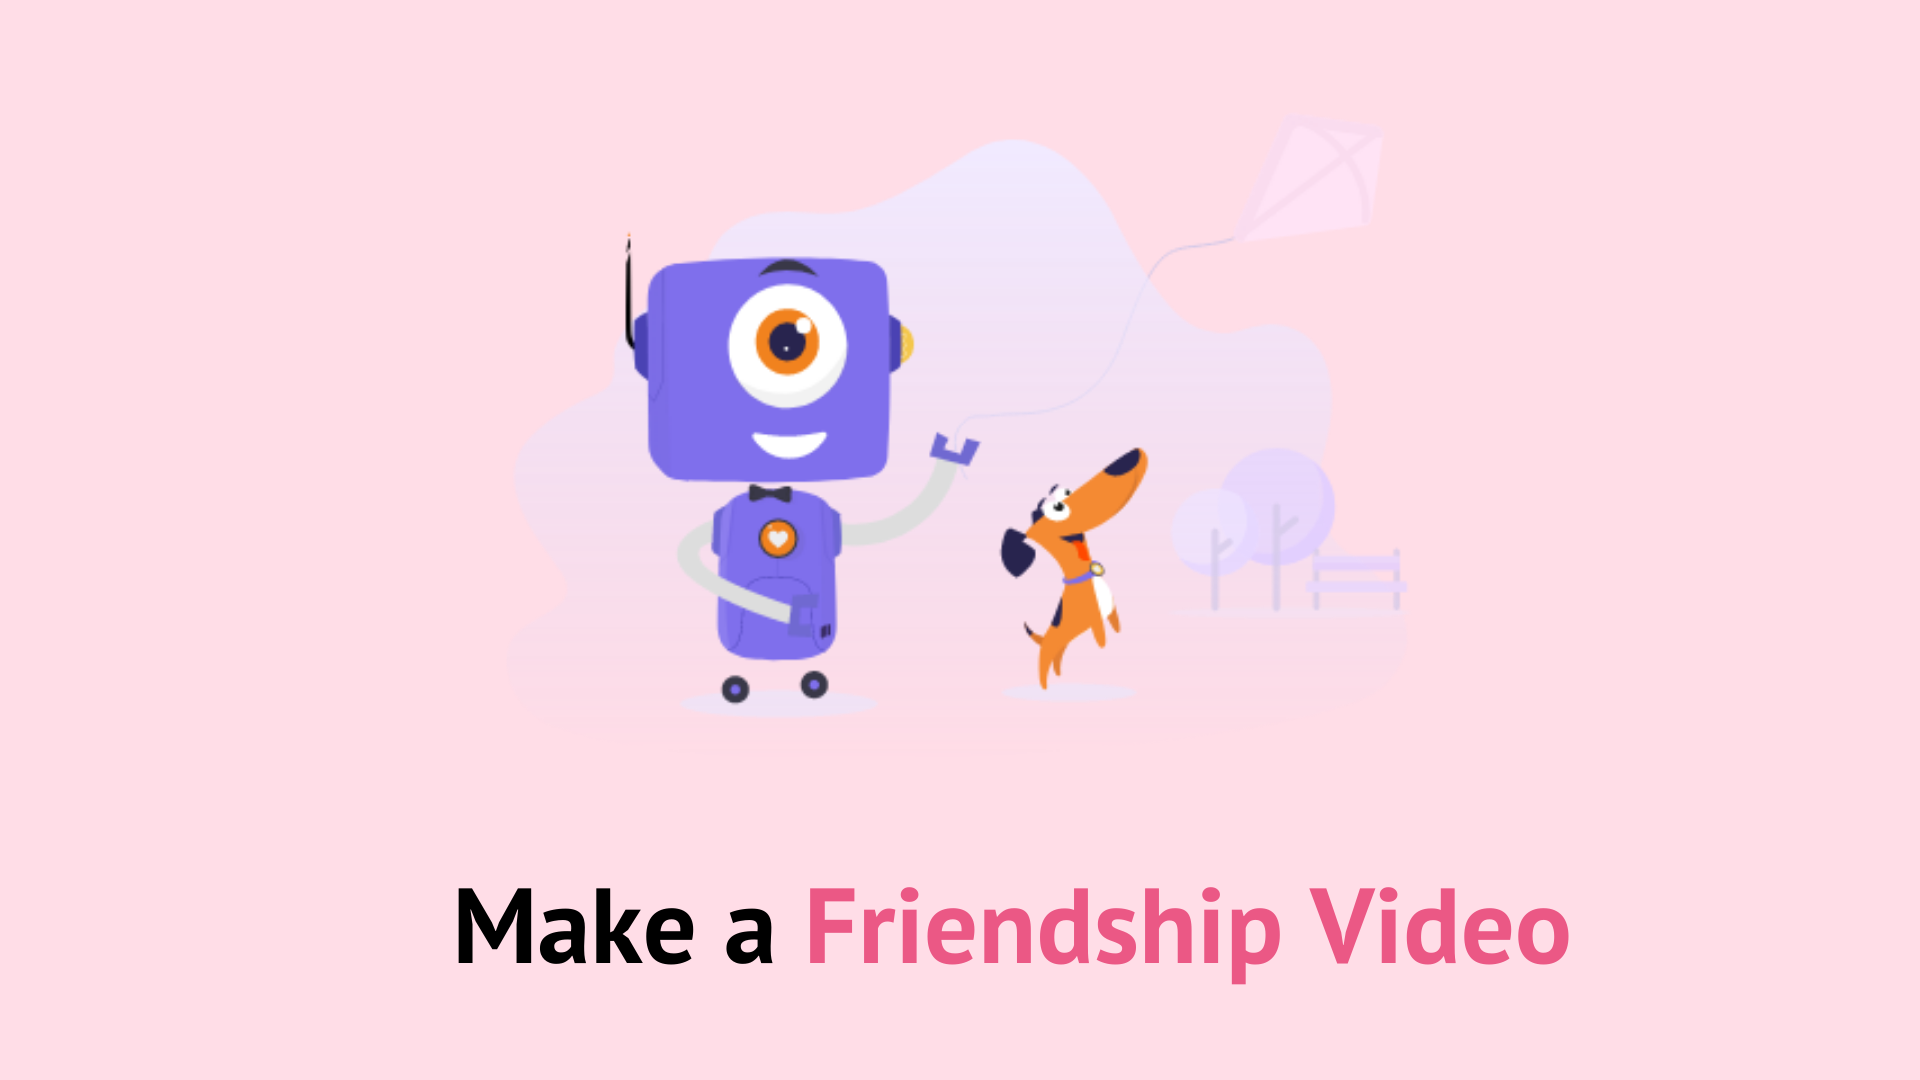 Friendship video